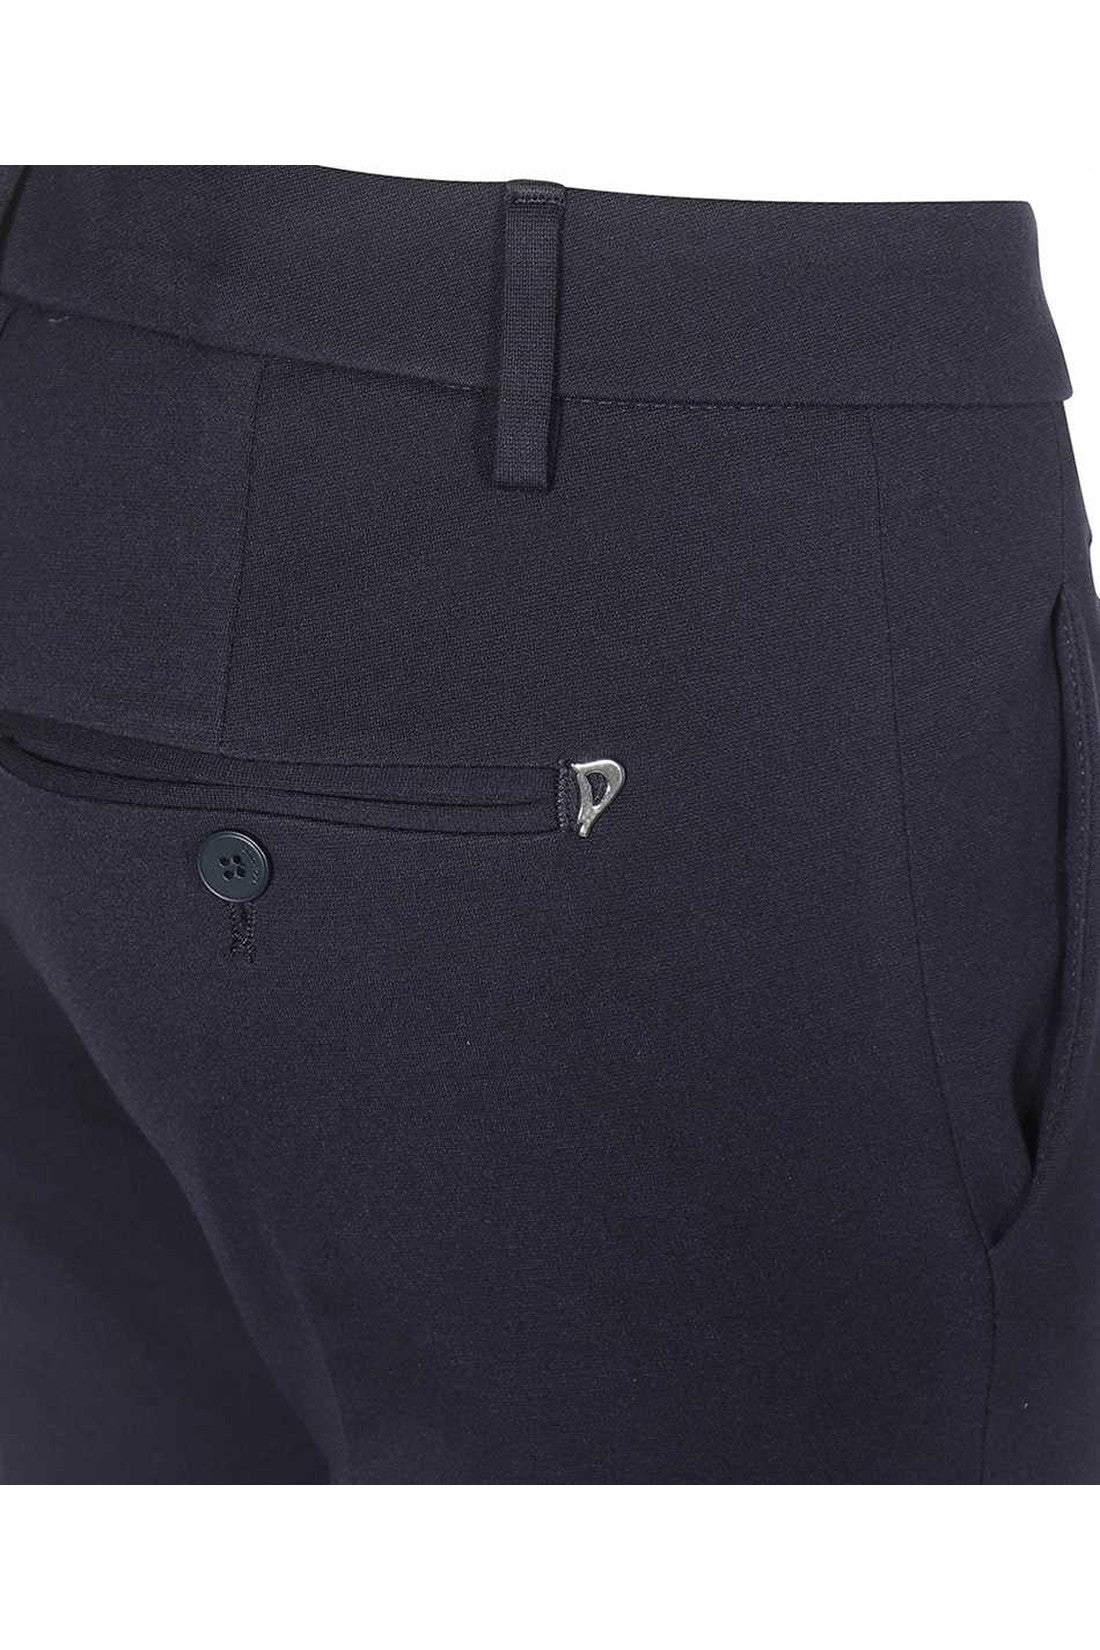 Technical fabric pants-Hosen-Dondup-OUTLET-SALE-ARCHIVIST